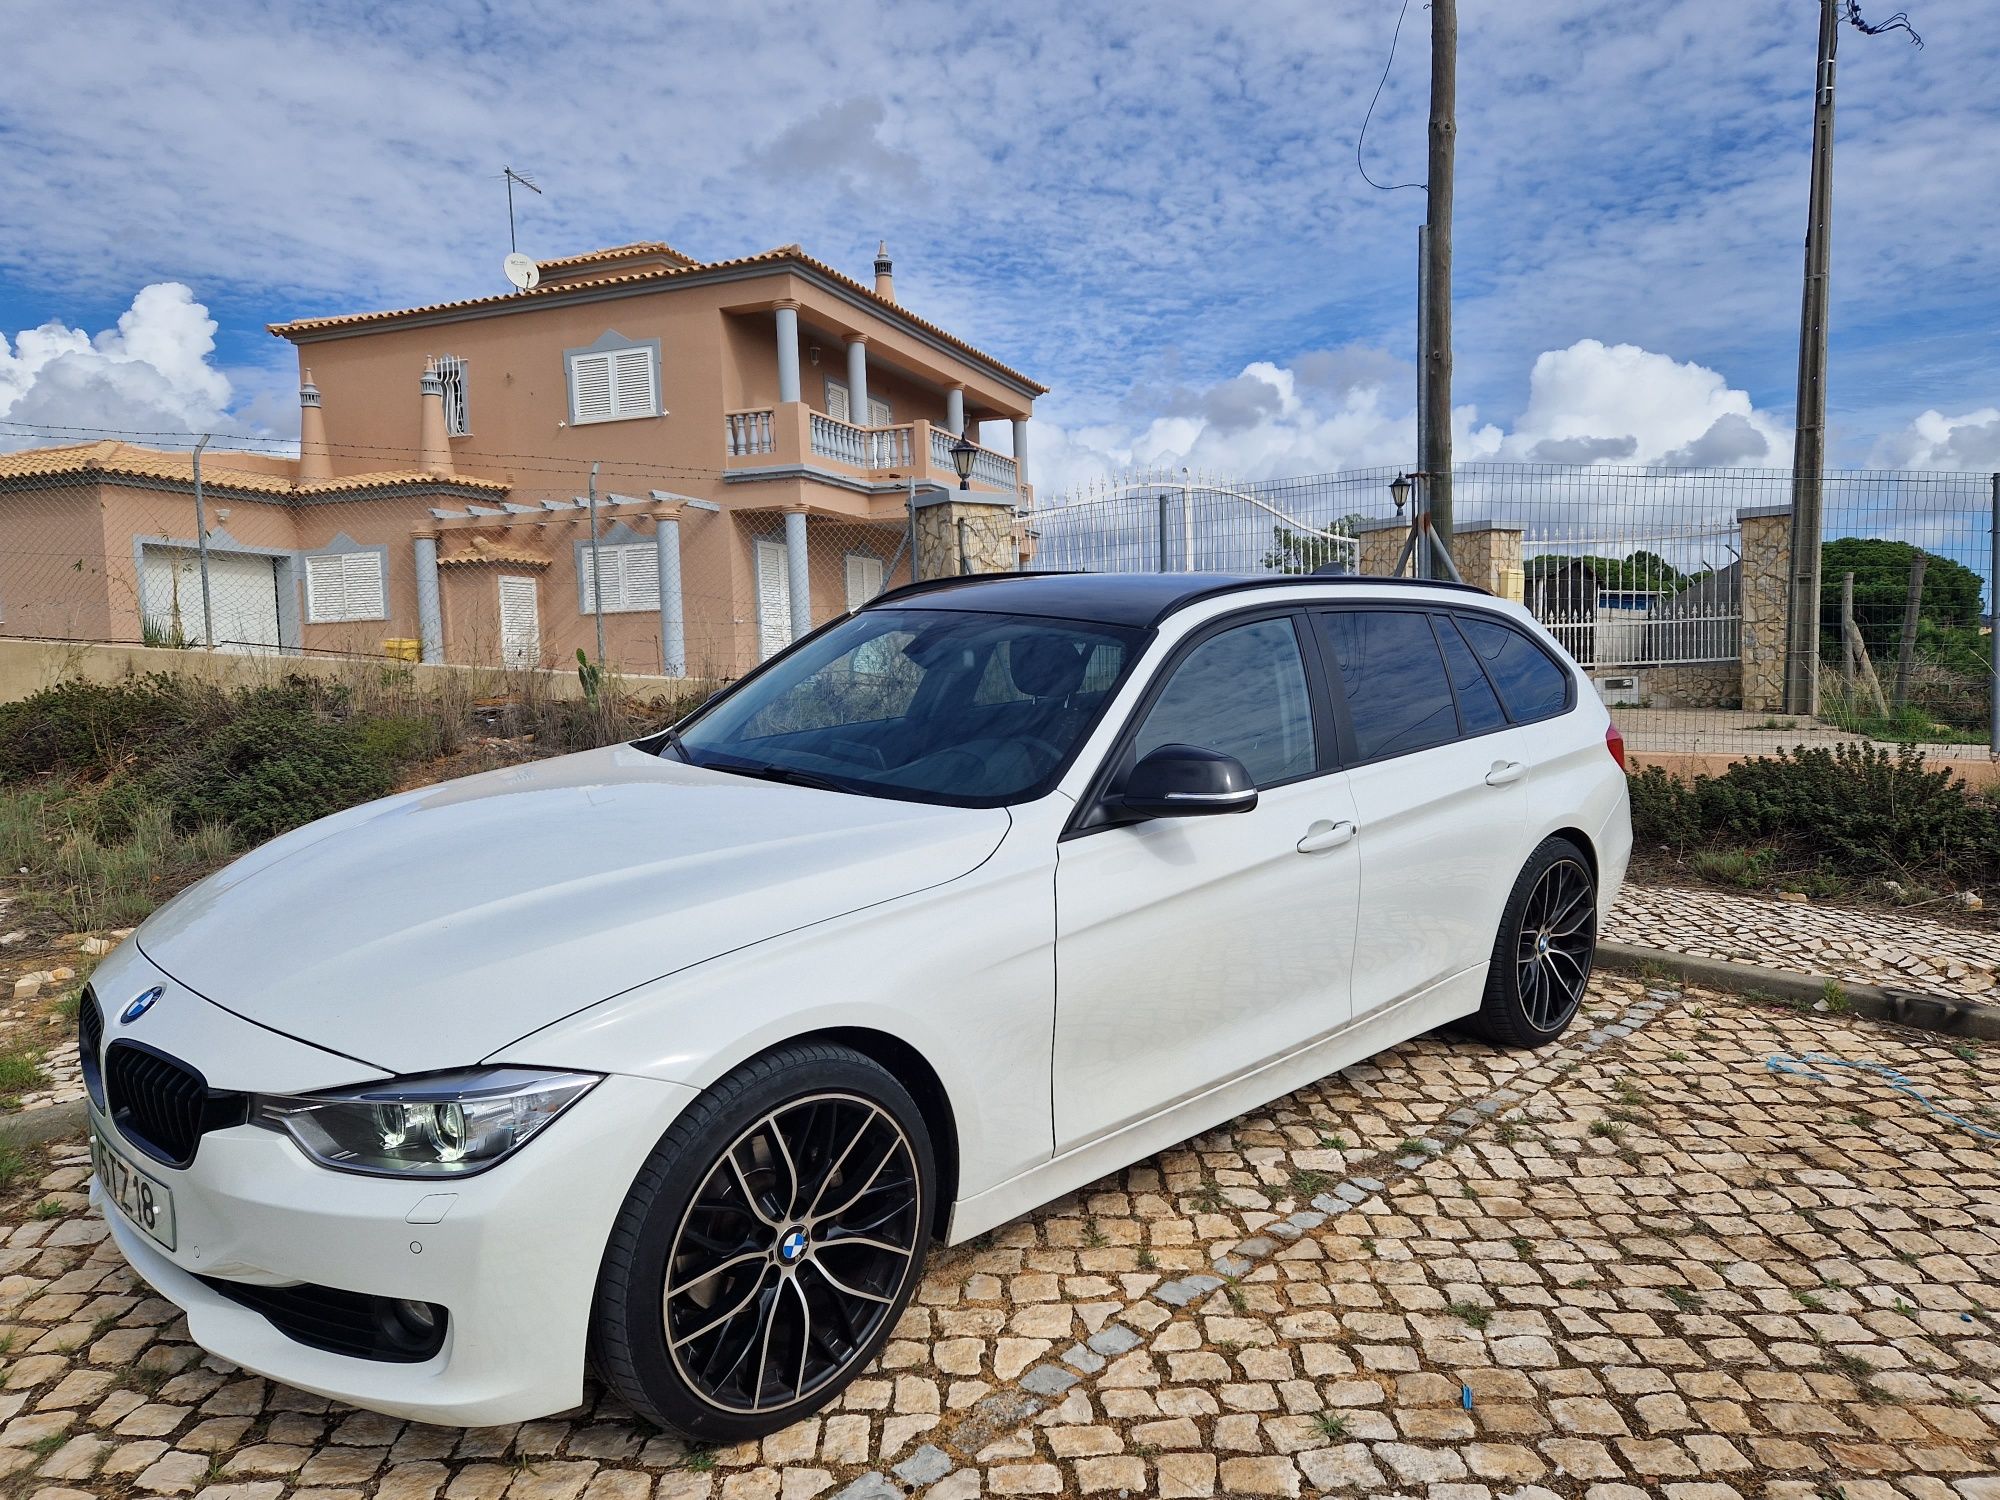 Auto Sport - BMW - OLX Portugal